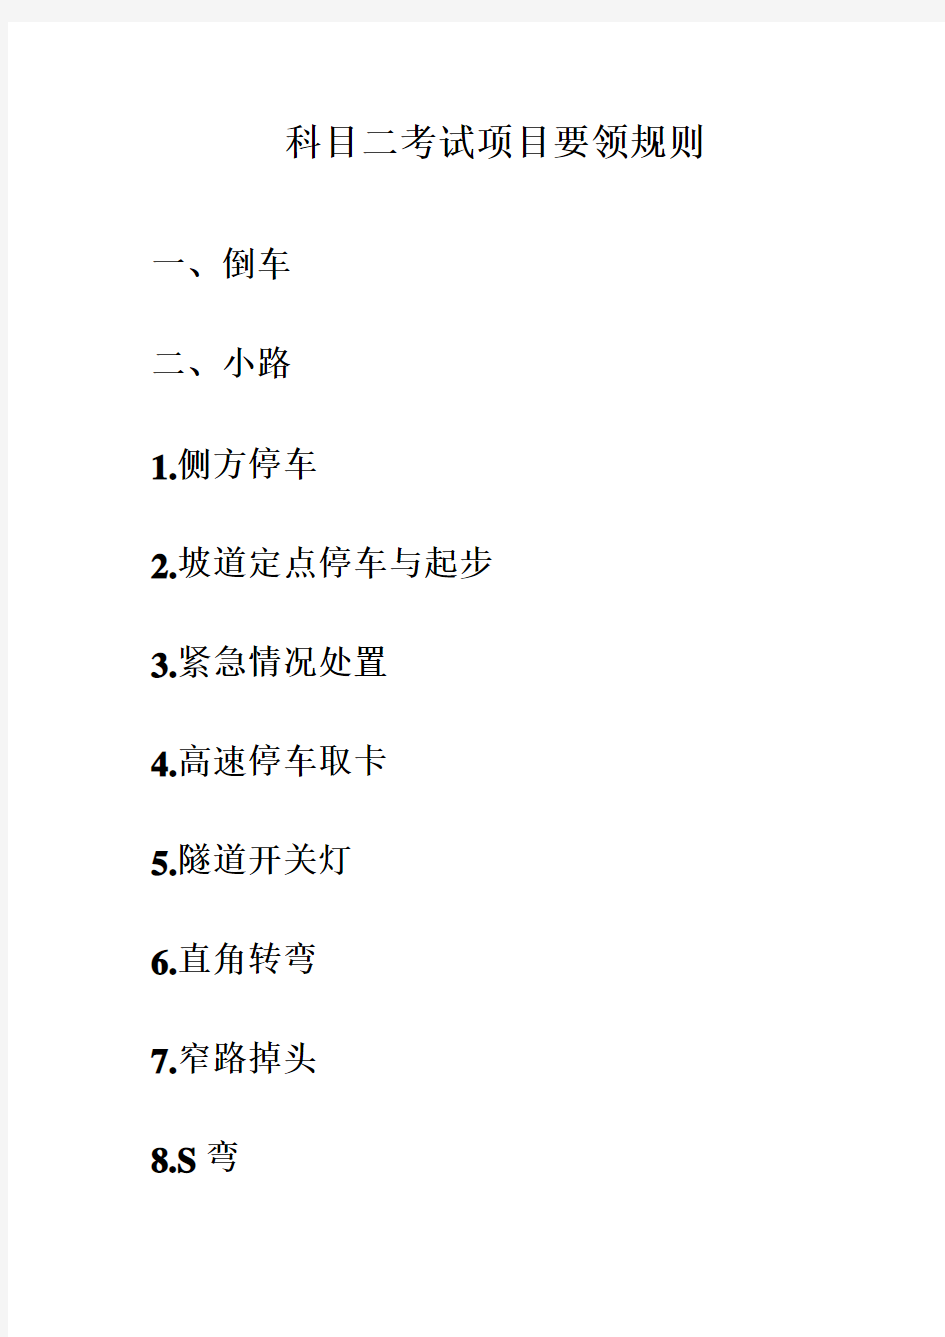 上海驾考科目二小路考试要领规则学习资料